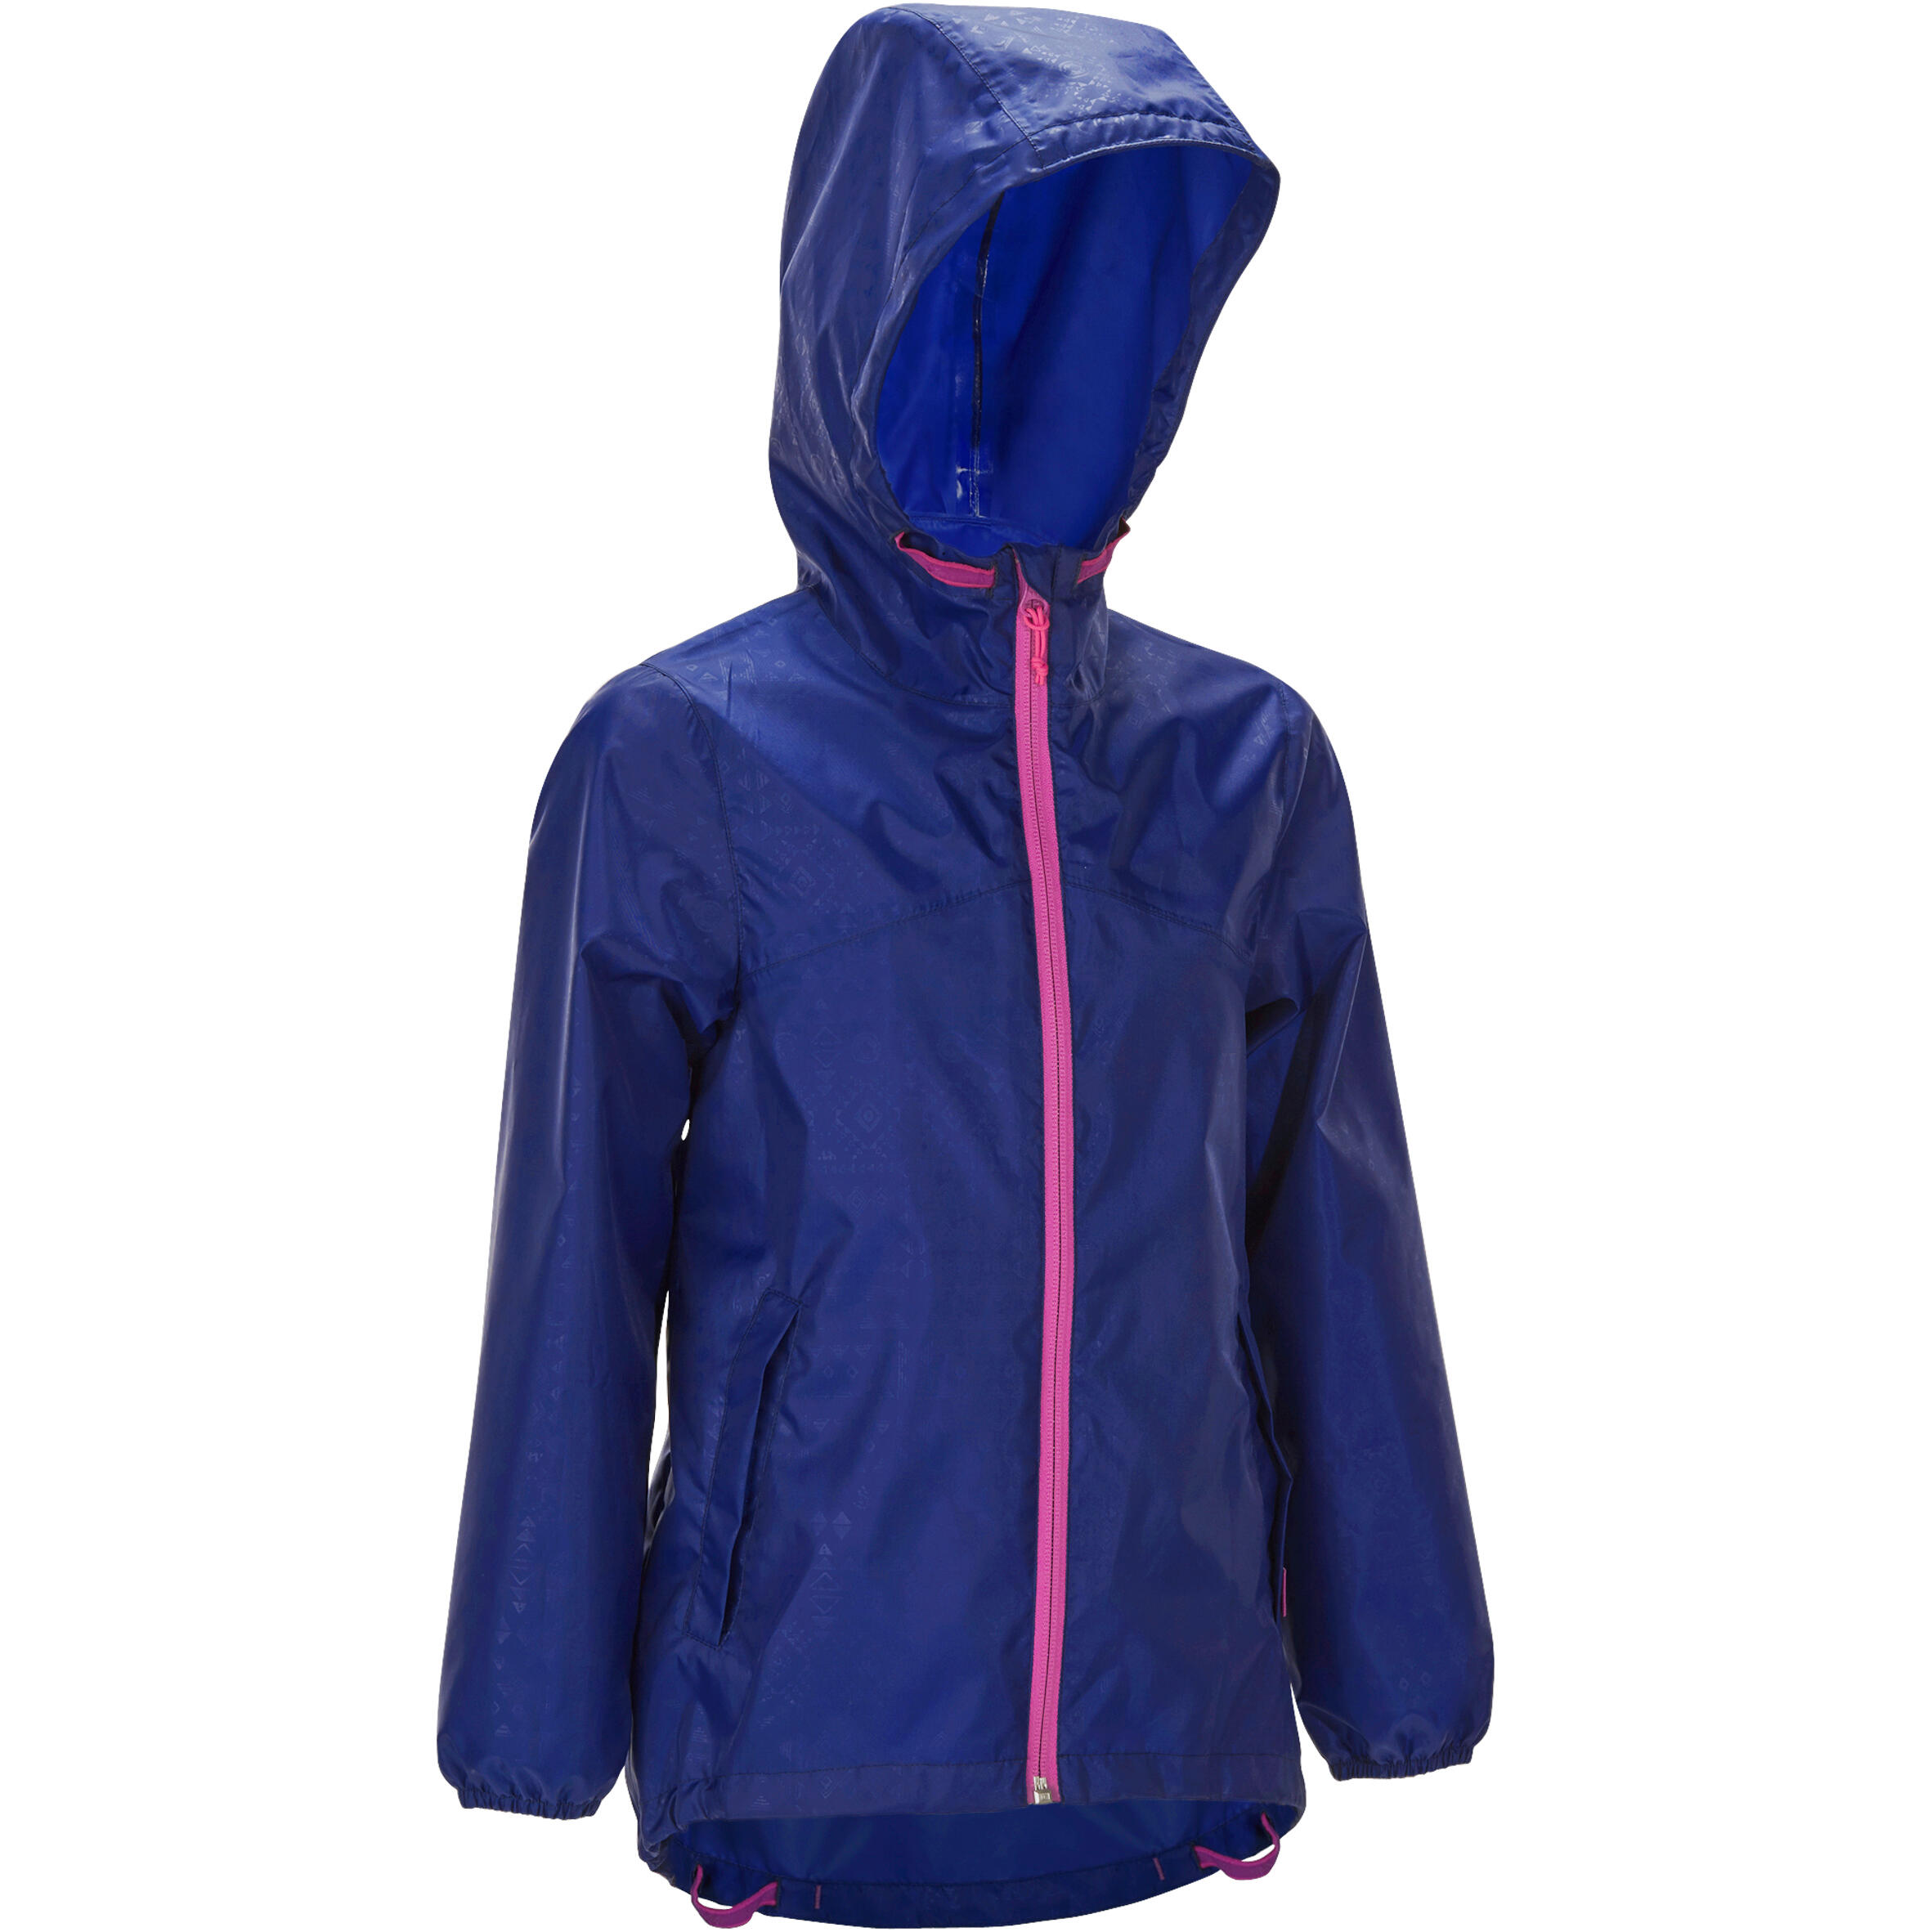 Hike 100 Waterproof Hiking Girl's Jacket - Navy Blue 2/14